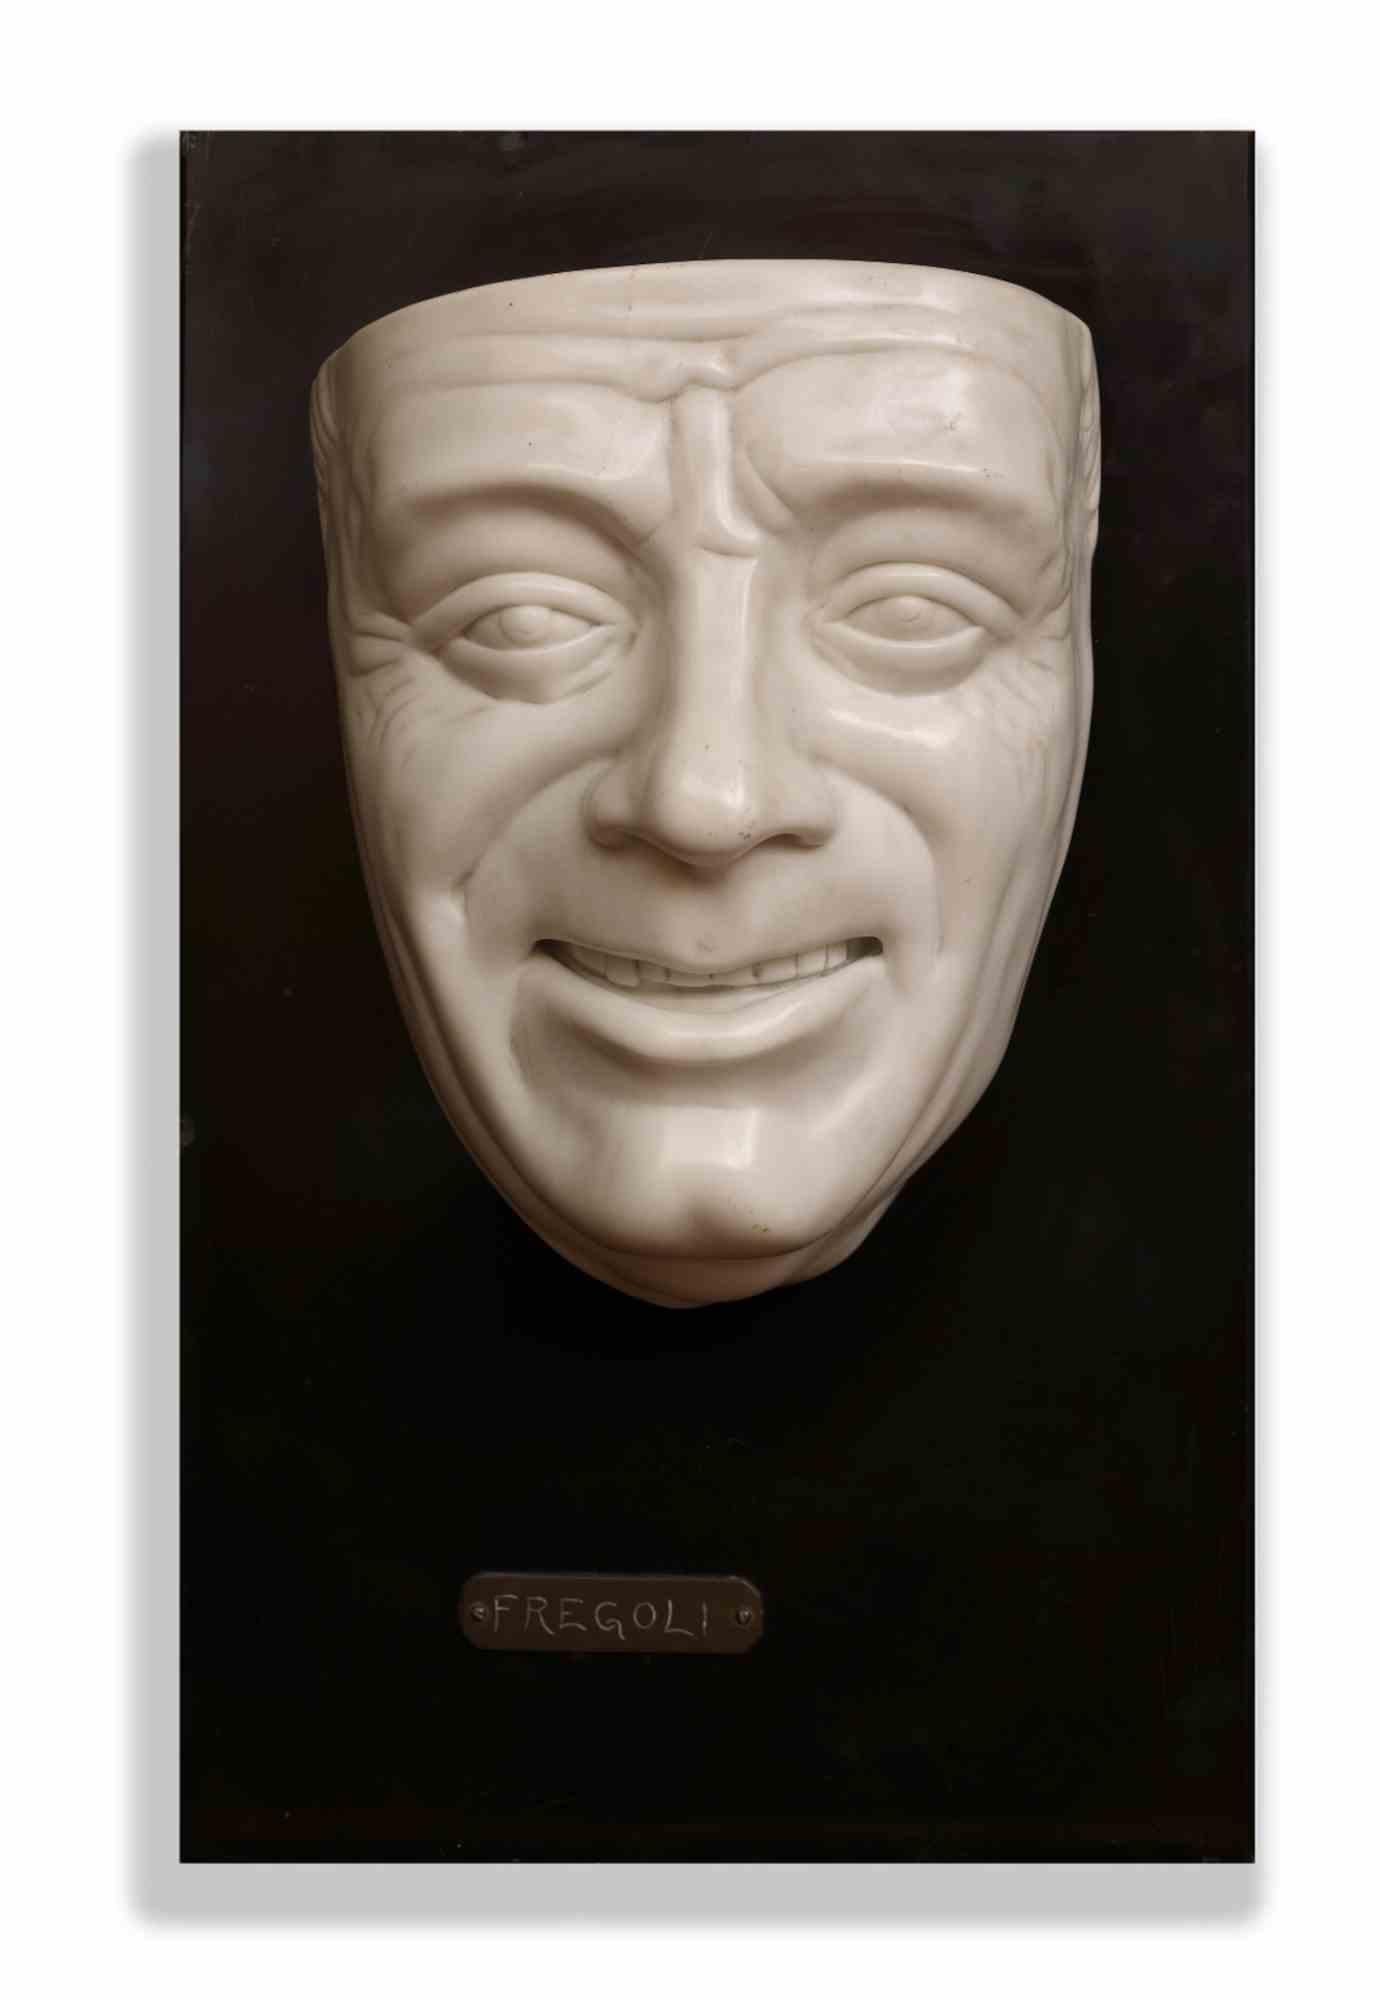 Arrighini Nicola (Pietrasanta 1905-1977)  ein Bildhauer aus Pietrasanta  (Italien) beschloss 1930, aus weißem Carrara-Marmor auf schwarzem Marmorsockel die Maske von Leopoldo Fregoli zu schaffen, einem der berühmtesten Schauspieler, Drehbuchautor